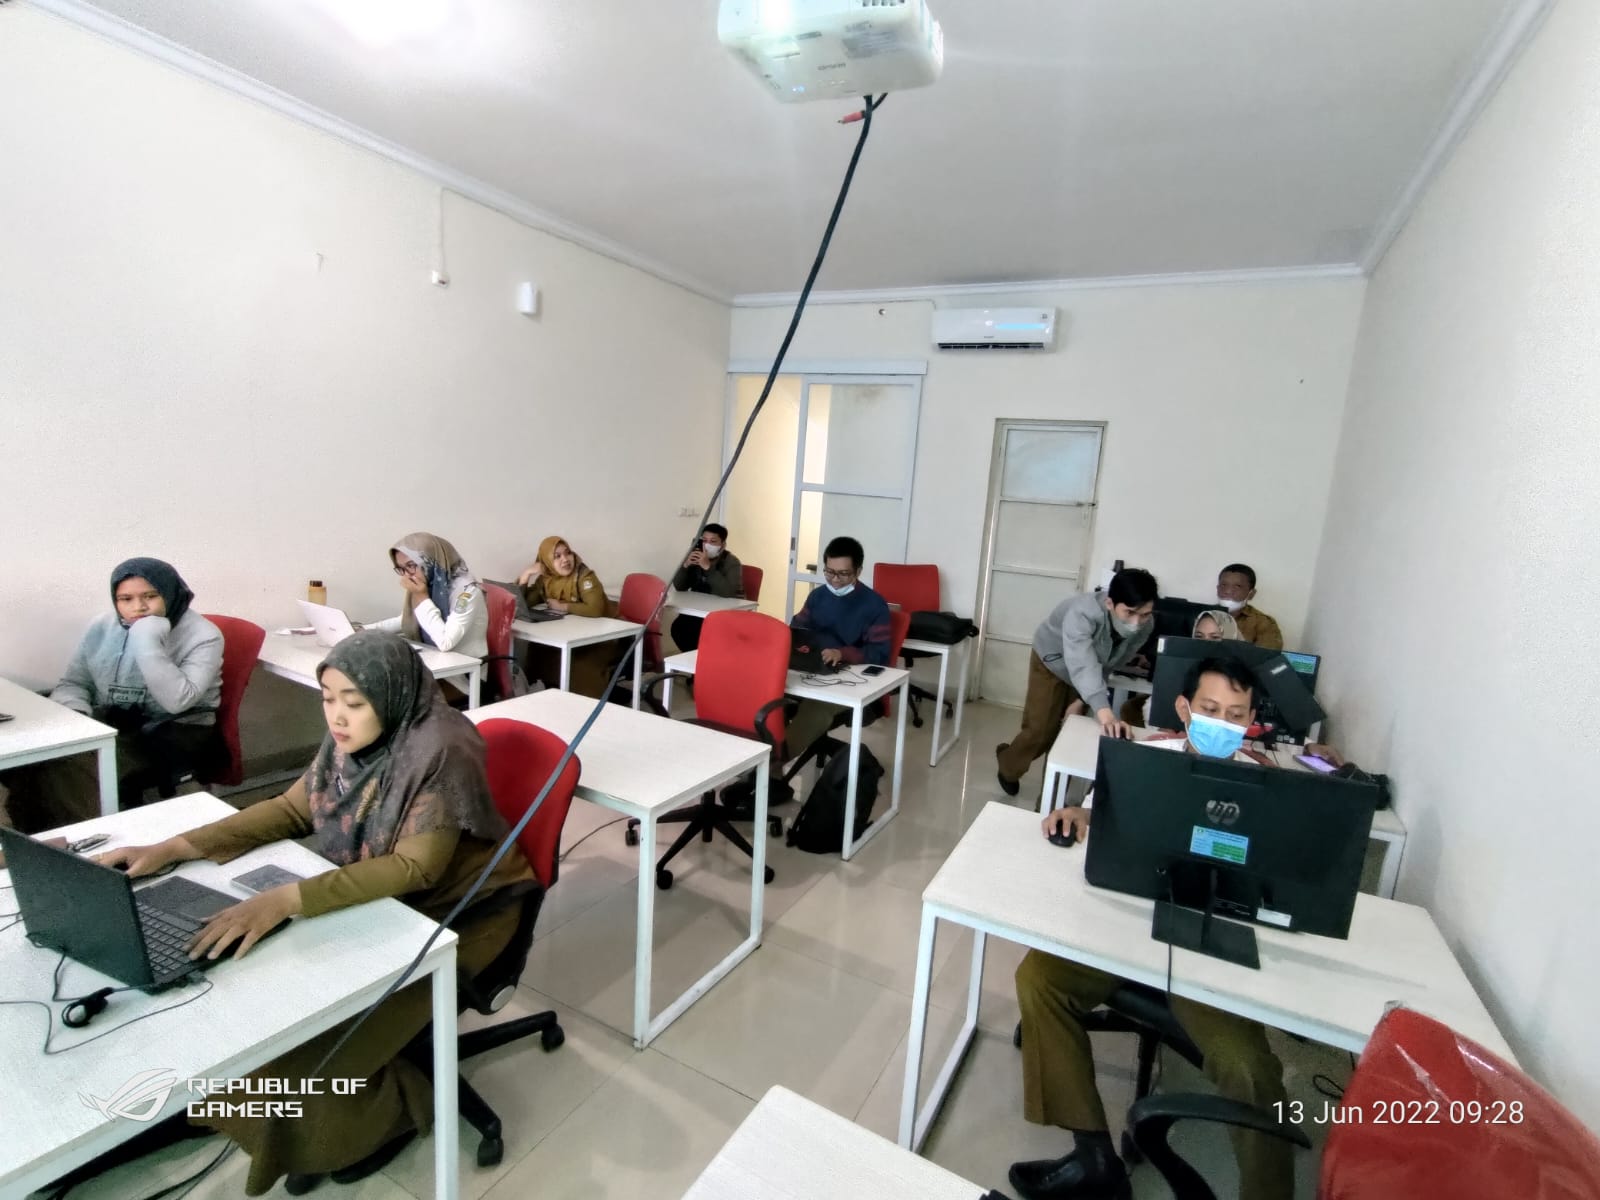 Diskominfostandi Kota Bekasi menyelenggarakan Kursus Singkat Program Training Intro Python Data Science